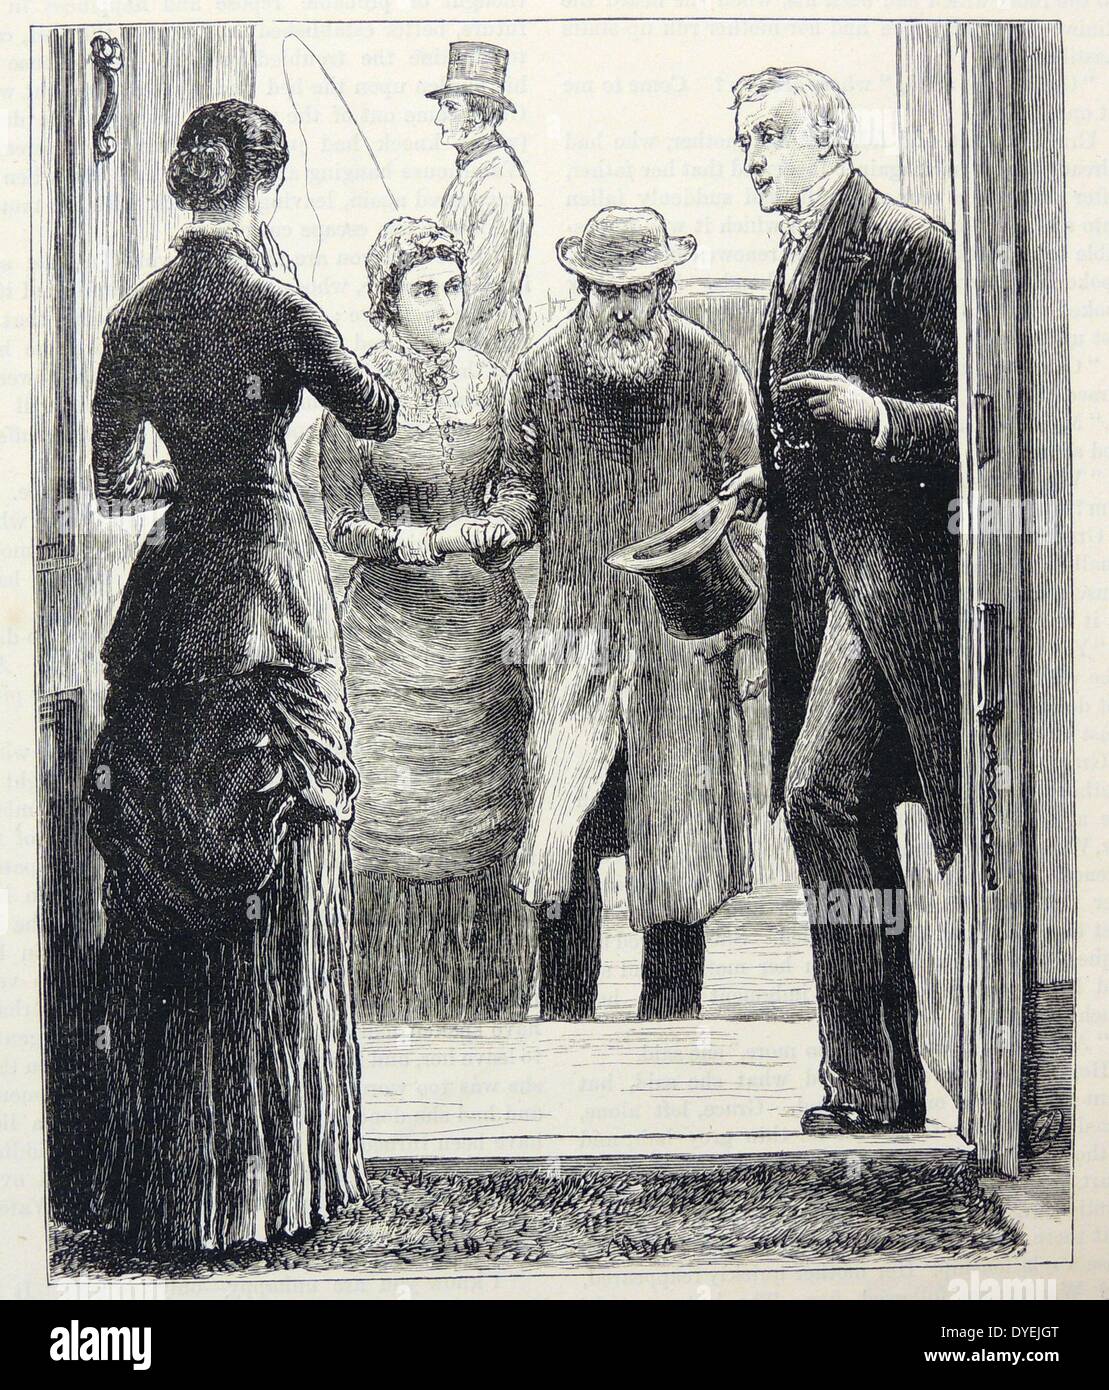 Vieil homme étant rapatriés d'un asile pour mourir. Sa fille, femme, et médecin sont avec lui. Illustration par Frank Dadd, Londres, 1883. Banque D'Images